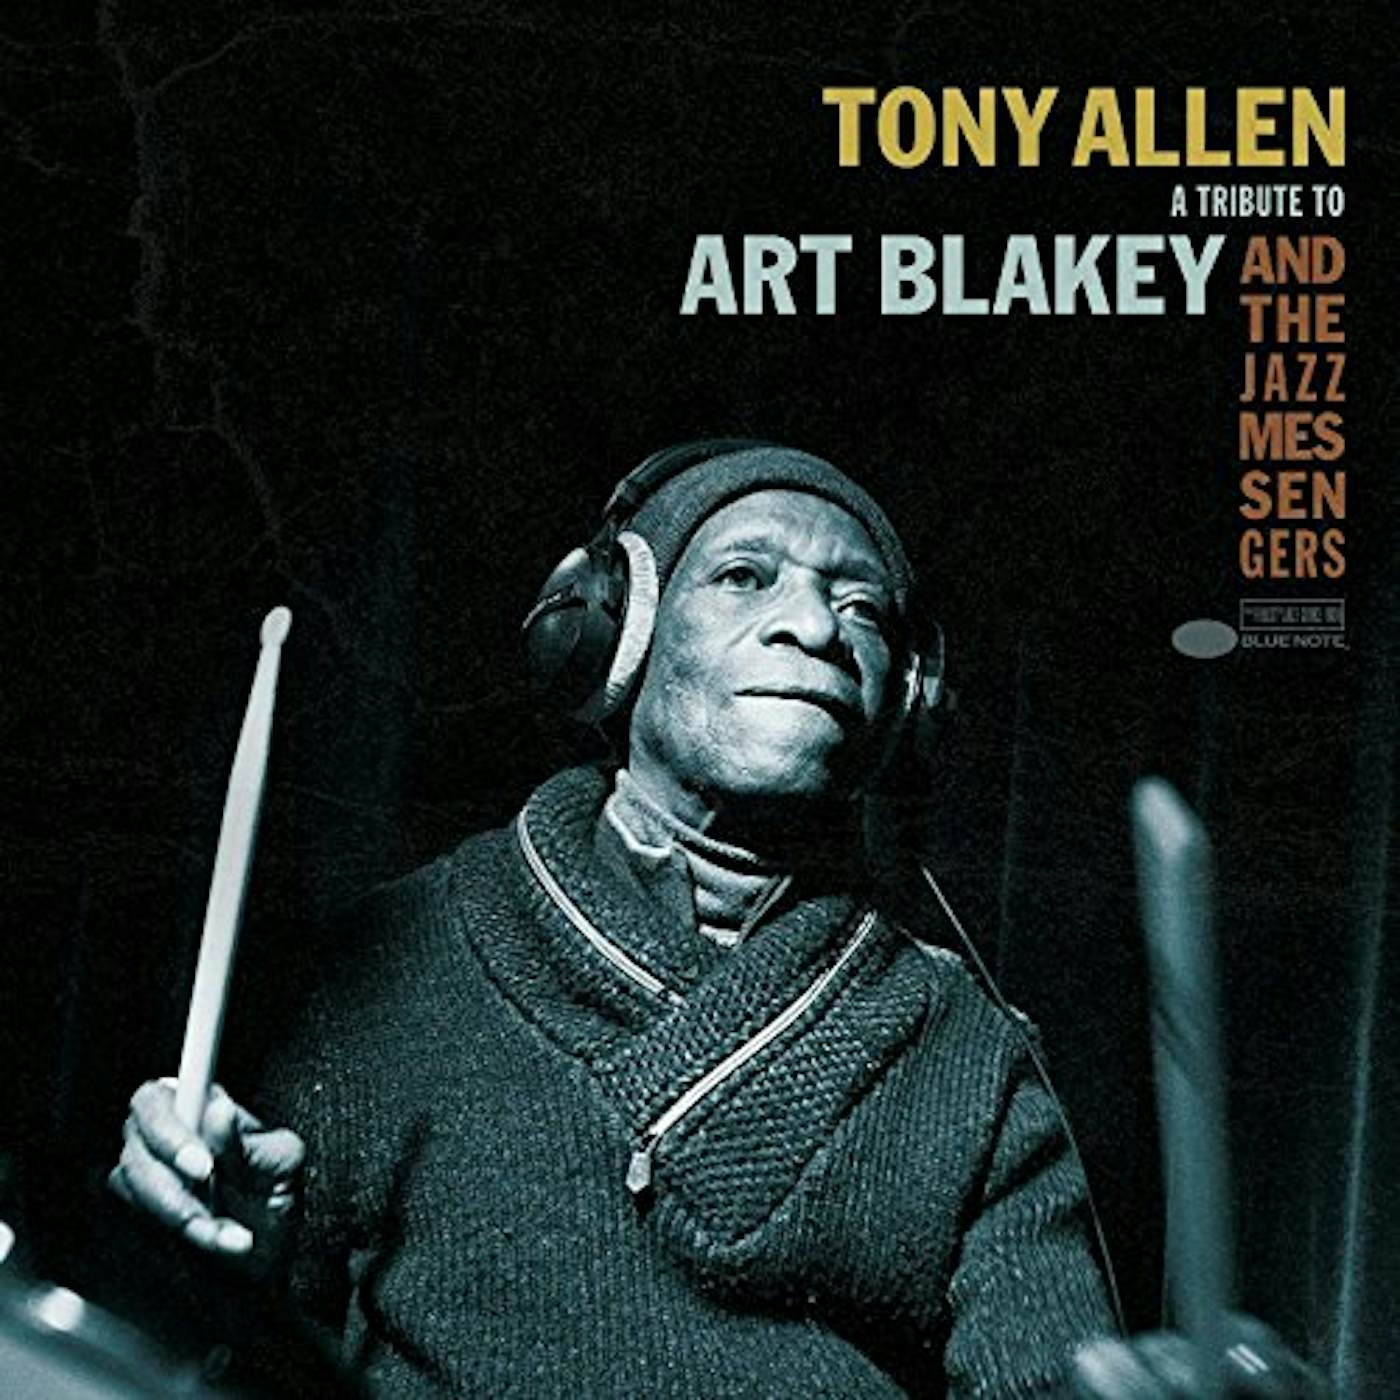 Tony Allen TRIBUTE TO ART Vinyl Record